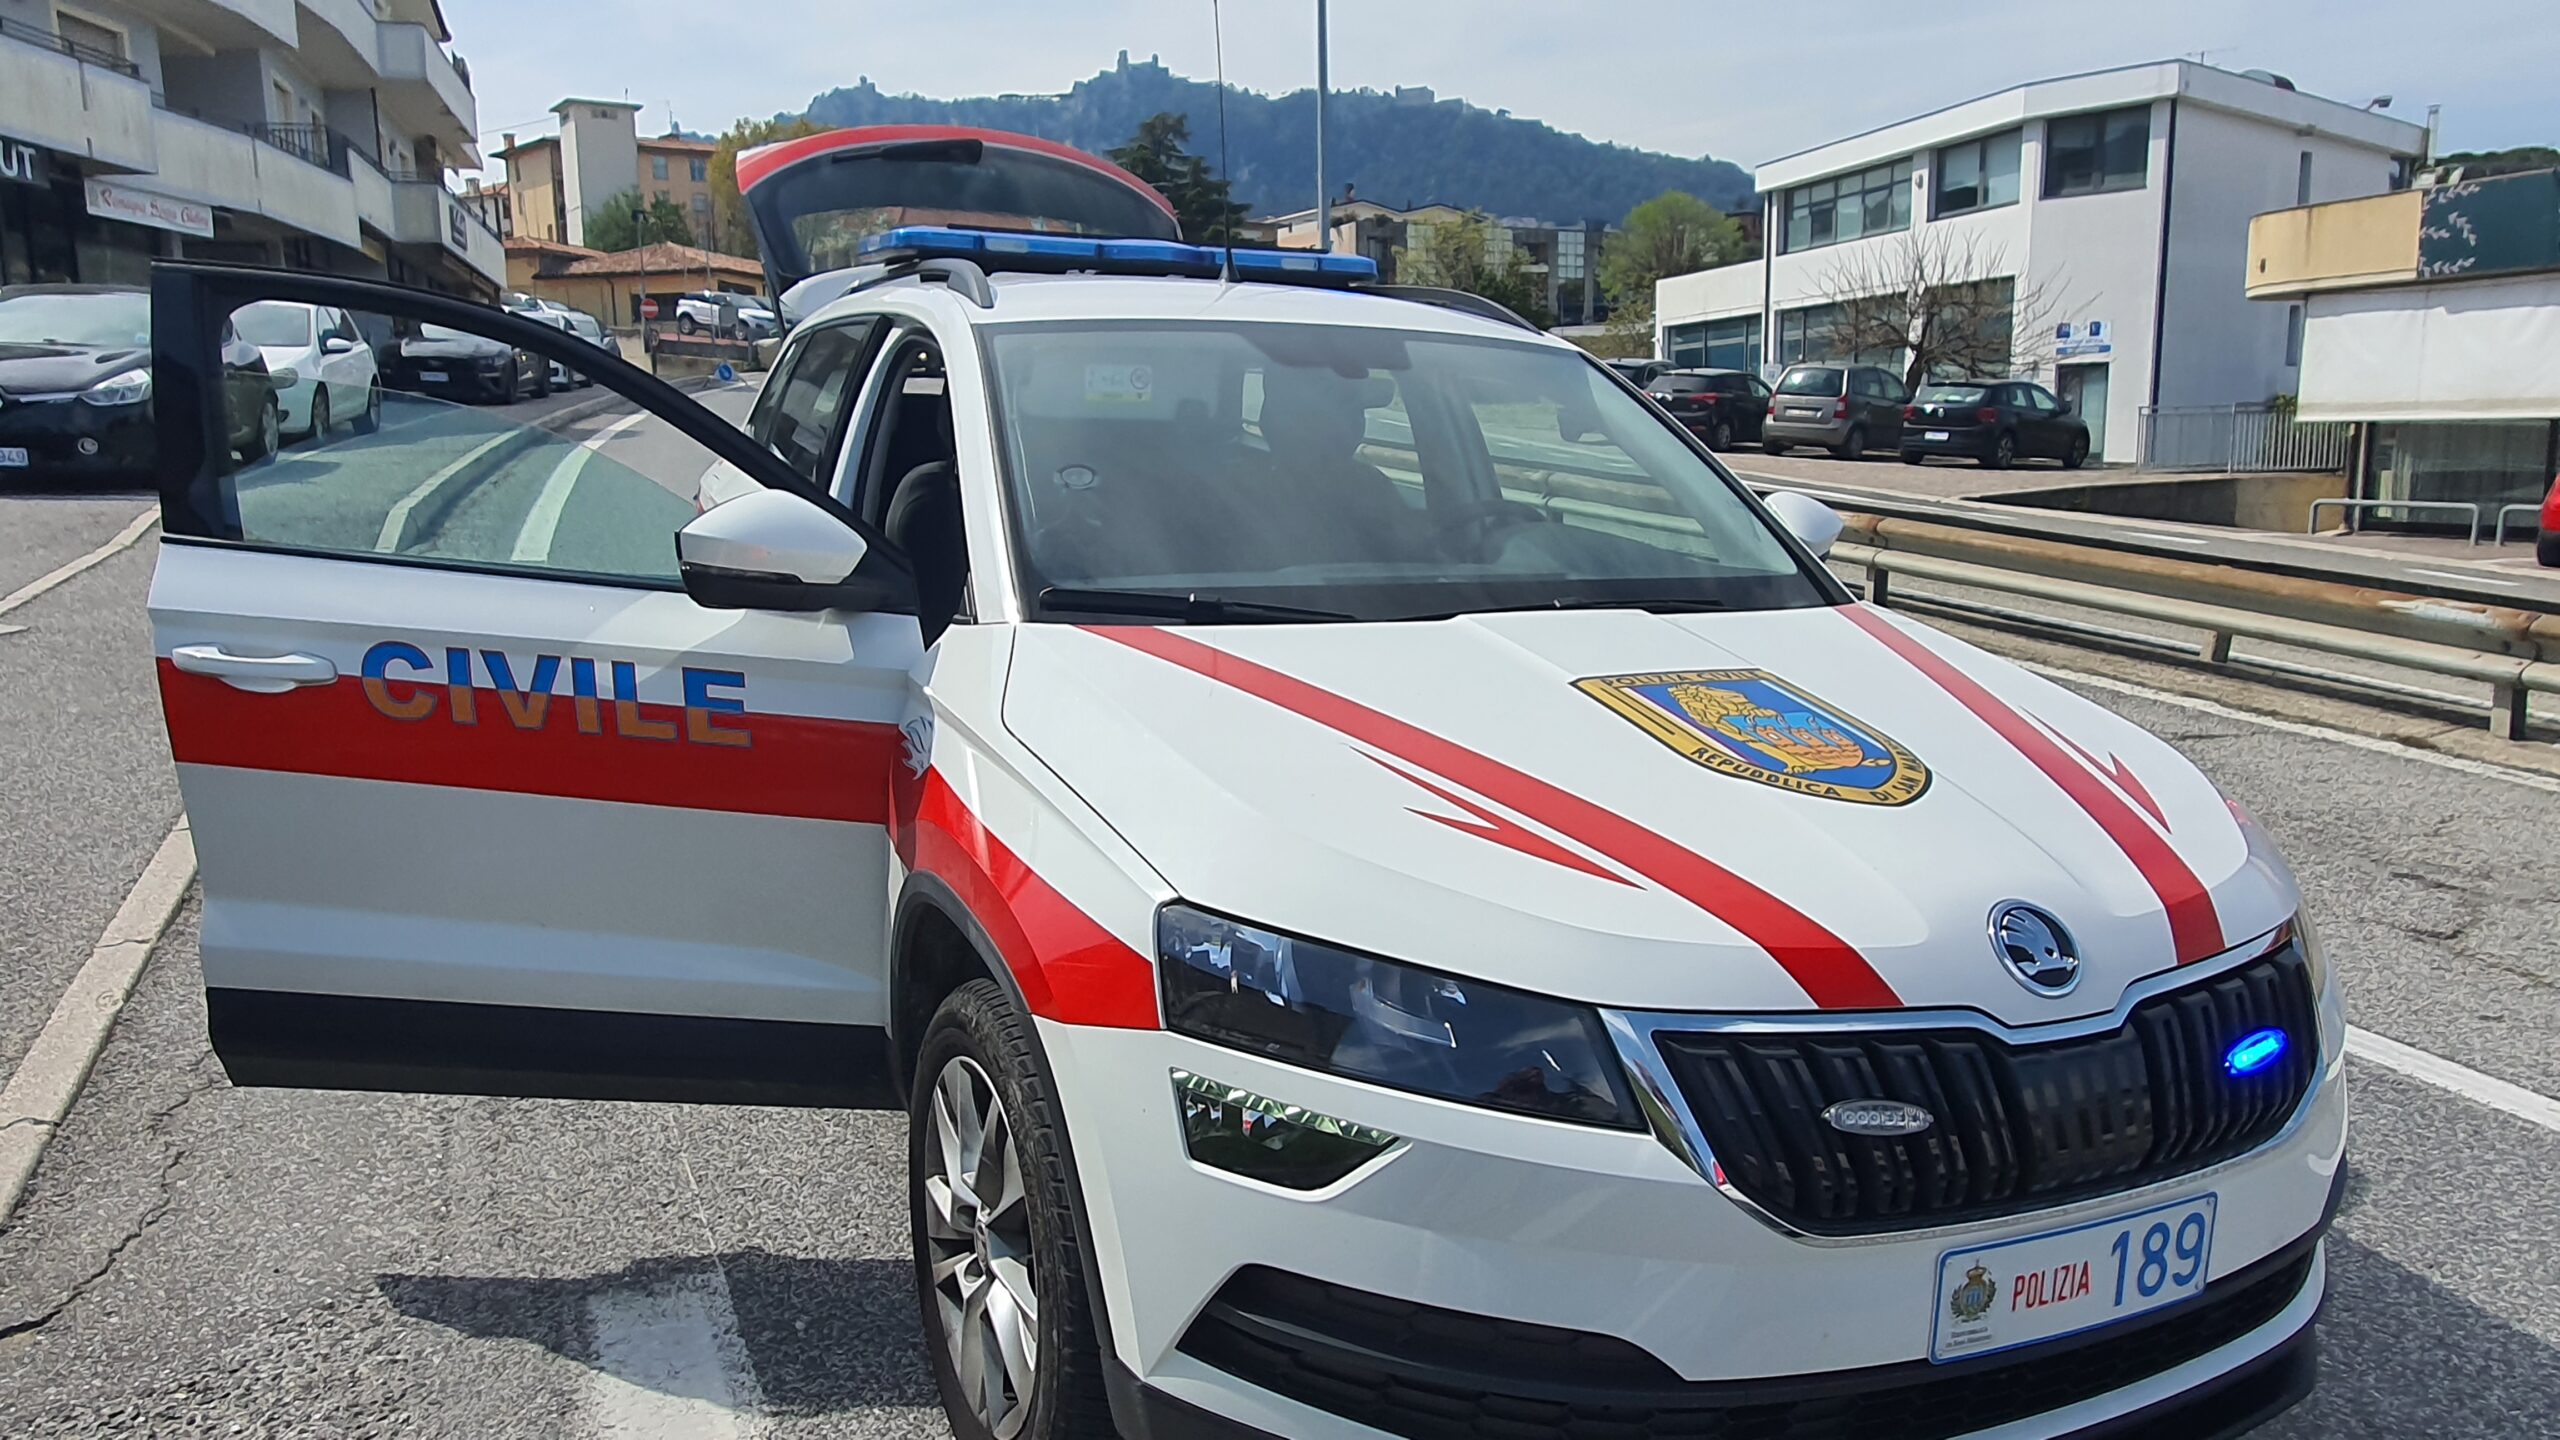 Rintracciato a San Marino un uomo fuggito da una struttura protetta in Italia